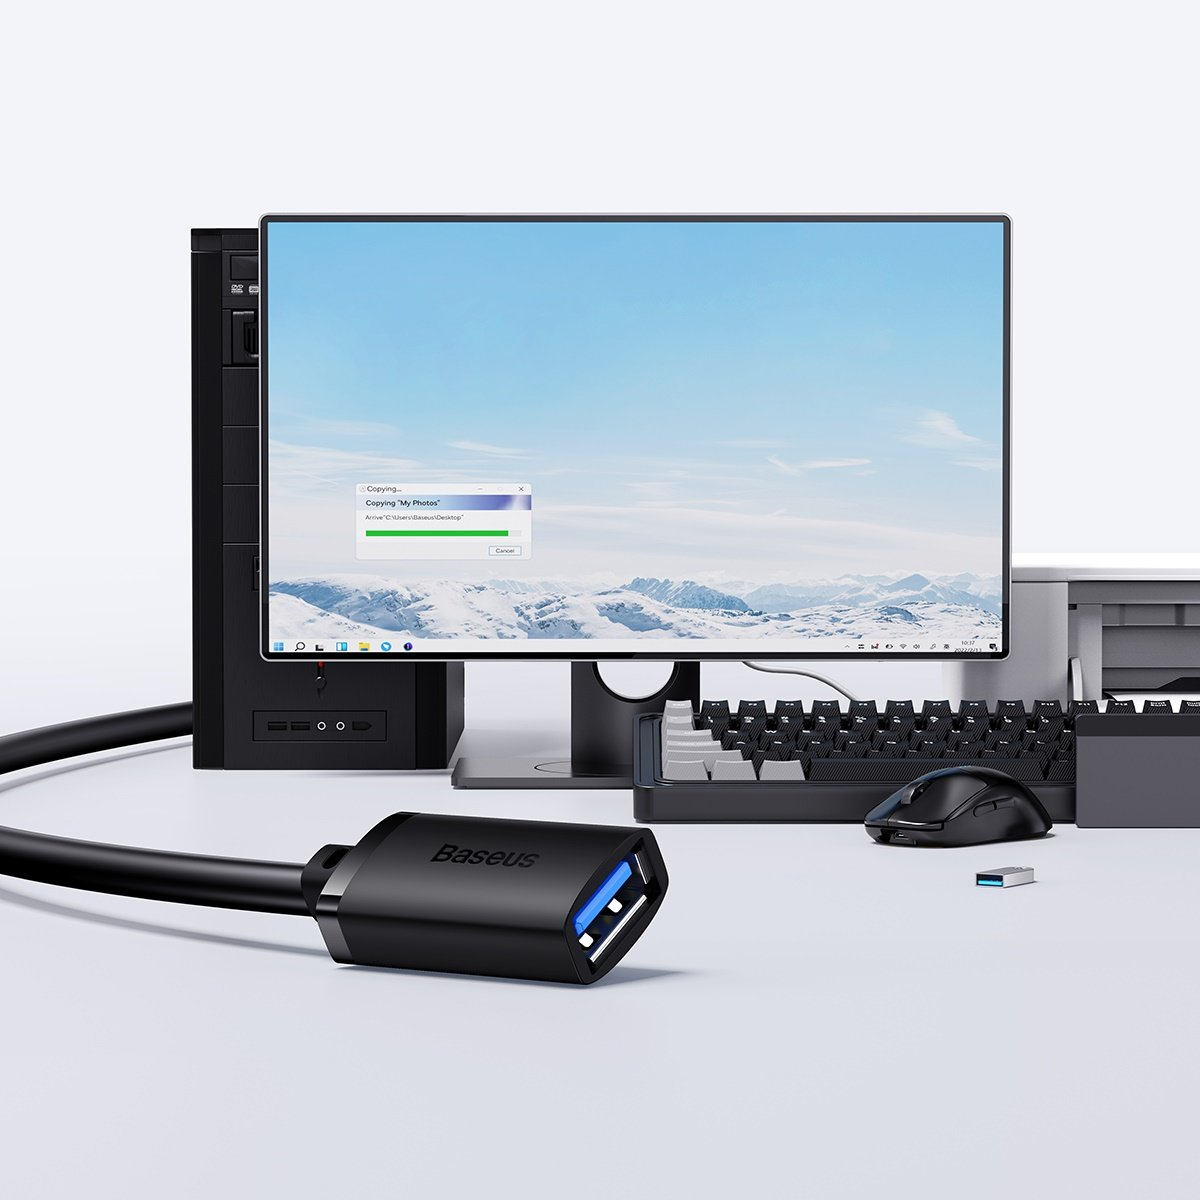 Baseus AirJoy Series USB-A 3.0 Extension Cable 1m